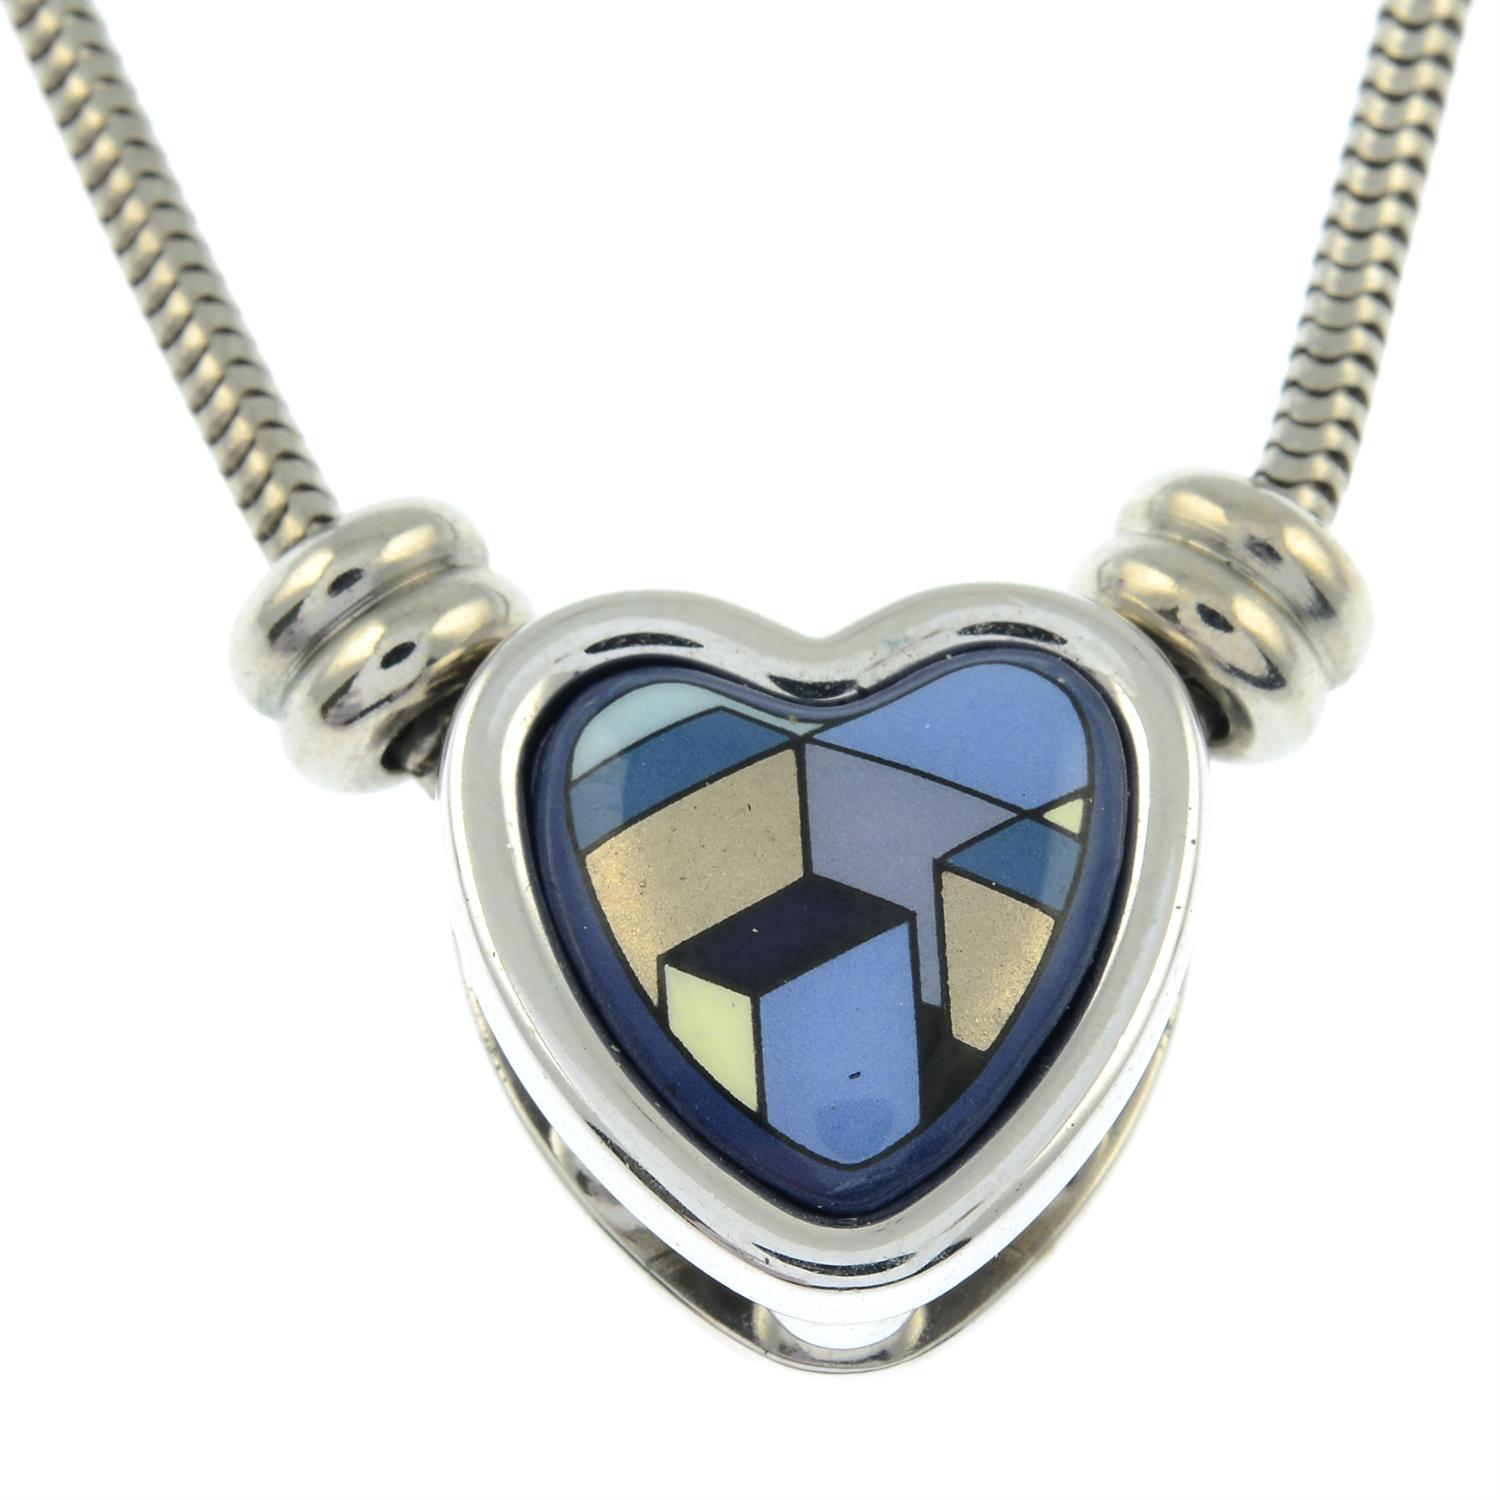 An enamel heart shape pendant necklace by, Michaela Frey